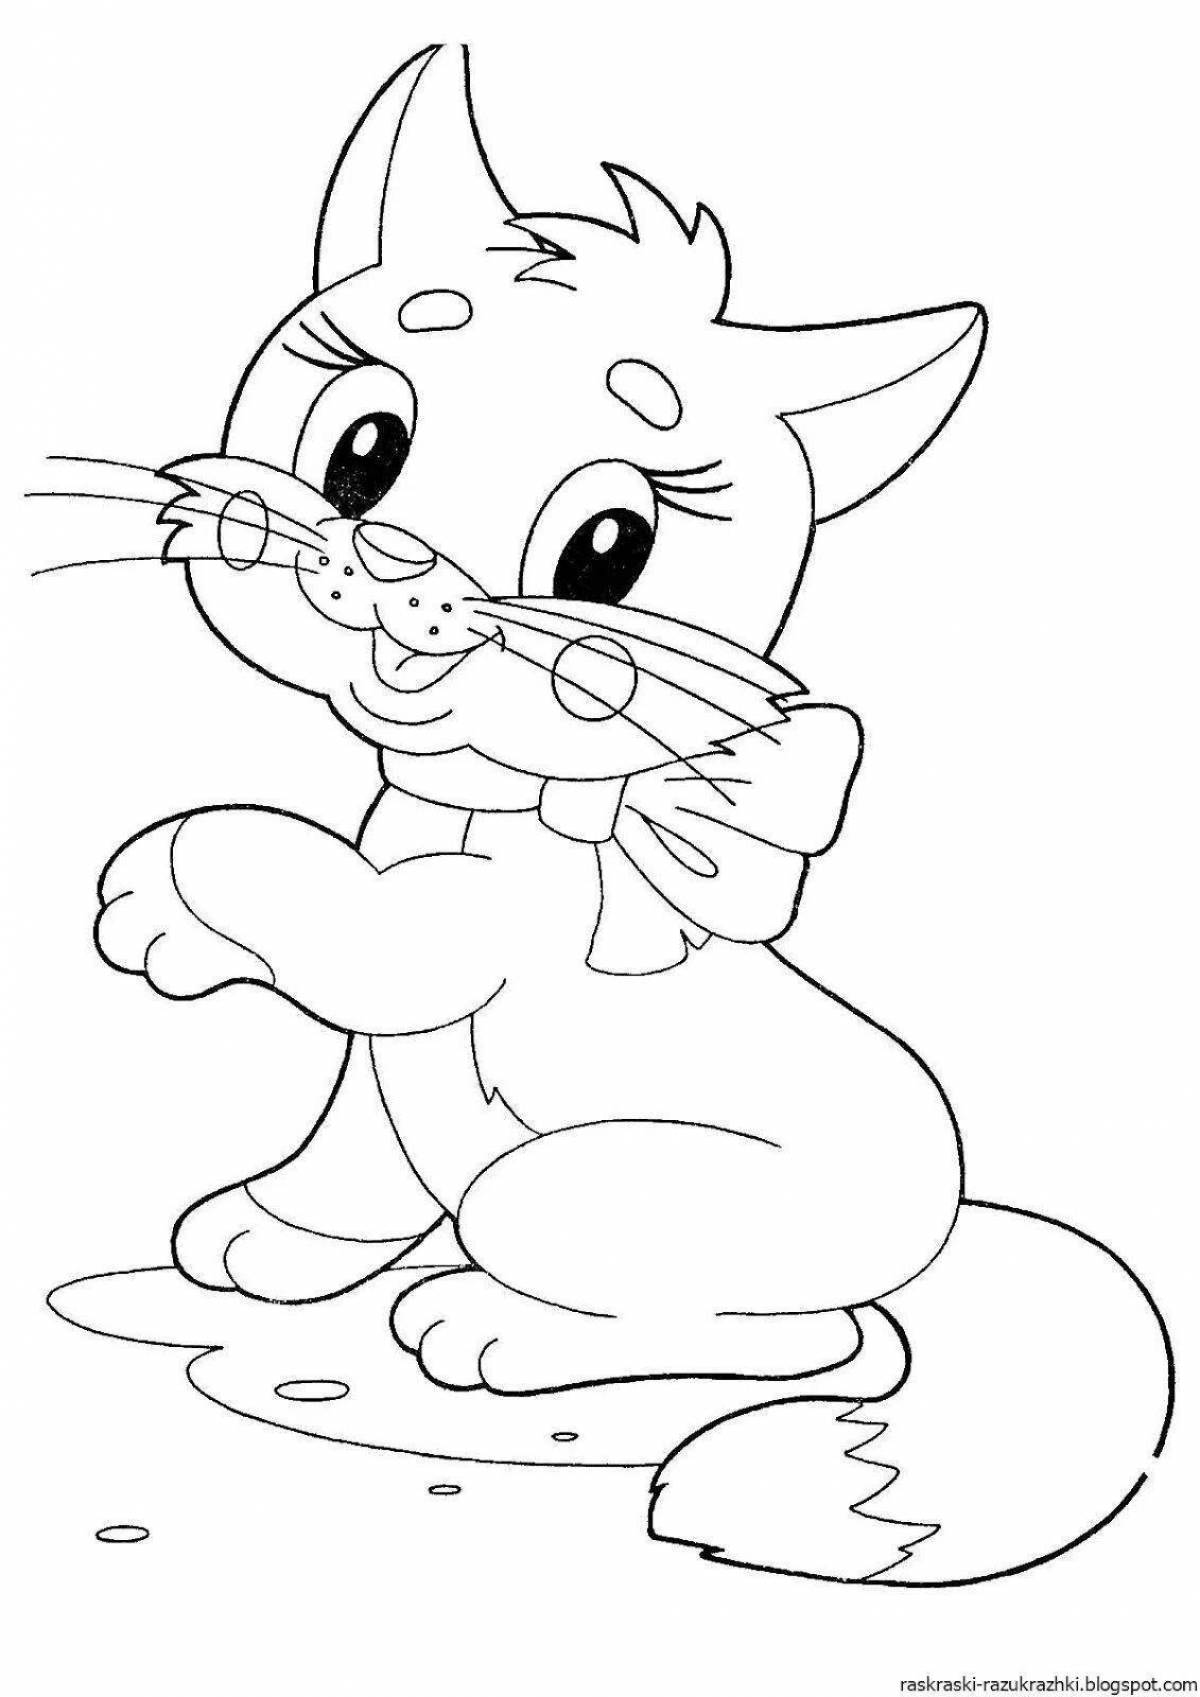 Очаровательная кошка-раскраска для детей